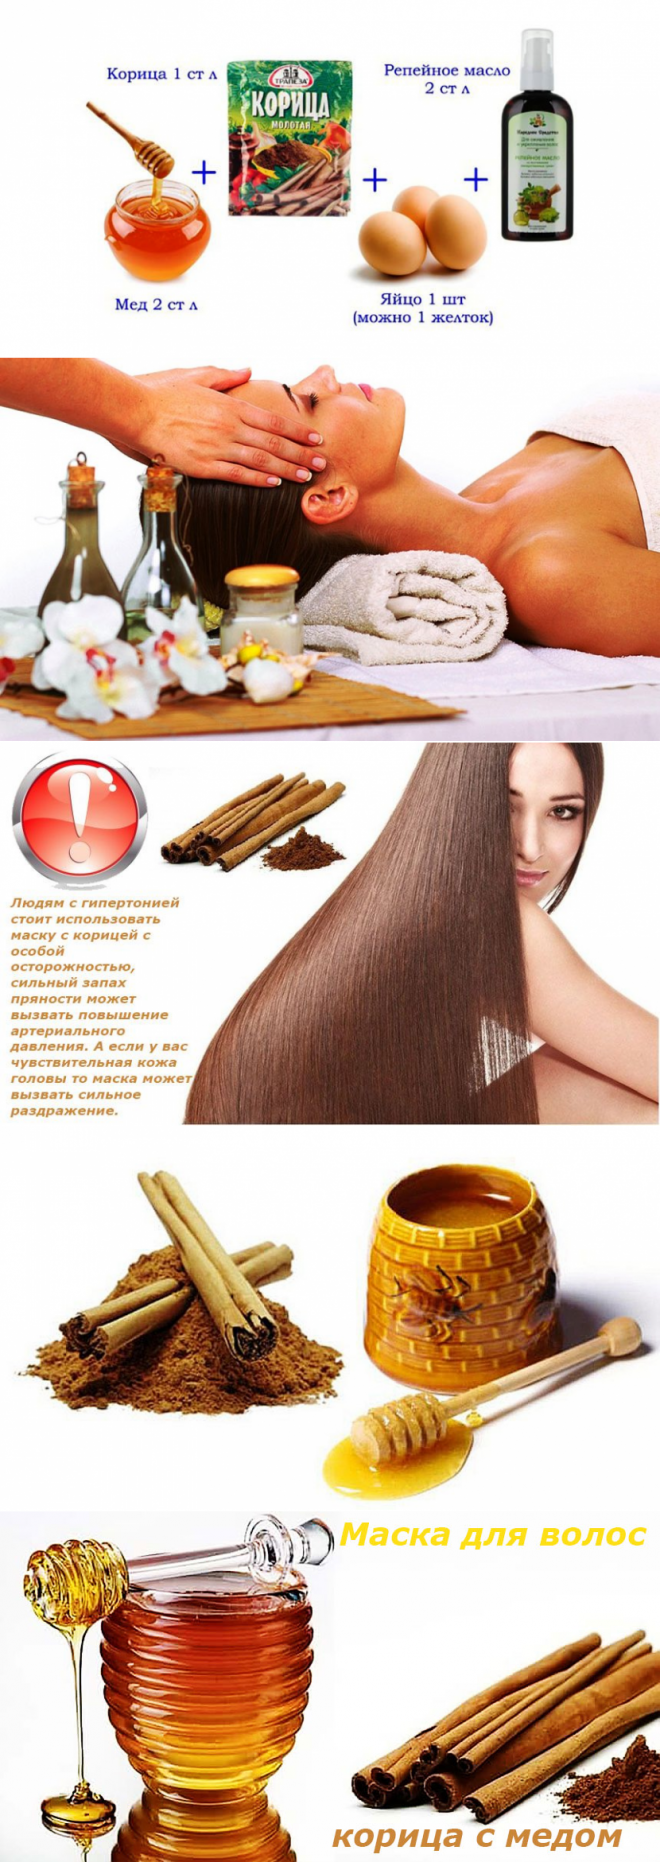 Масло корицы для волос: способы применения для роста, питания и восстановления локонов